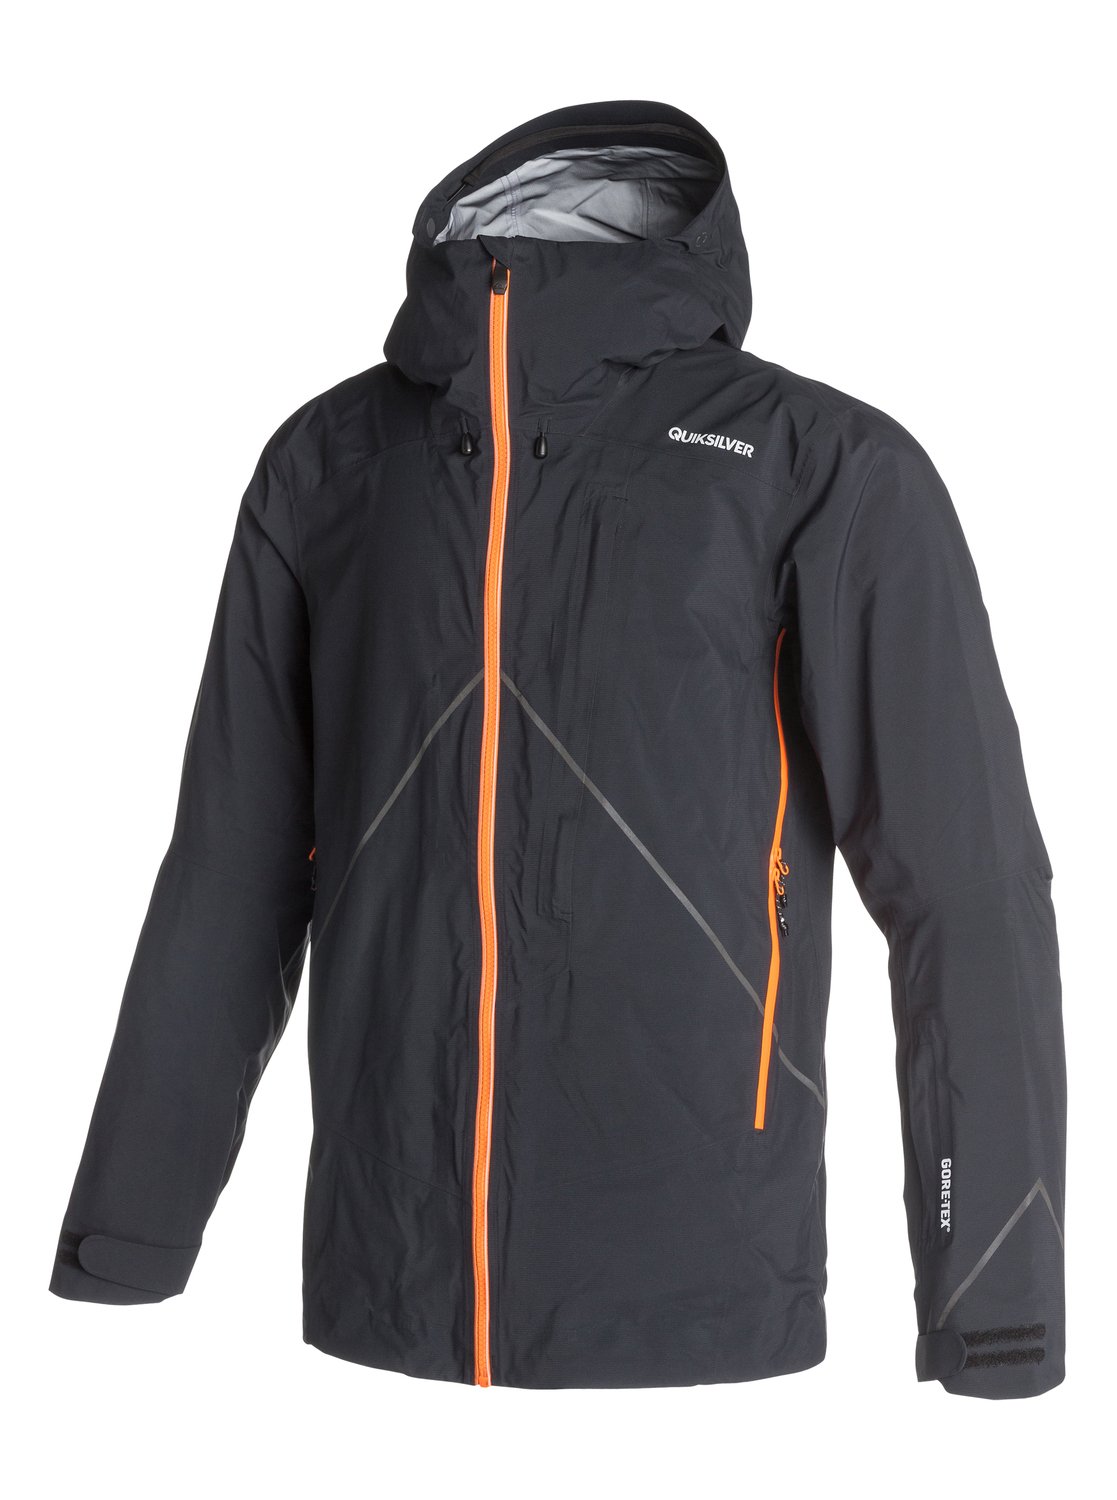 That's It 3L GORE-TEX Snow Jacket EQYTJ03002 | Quiksilver